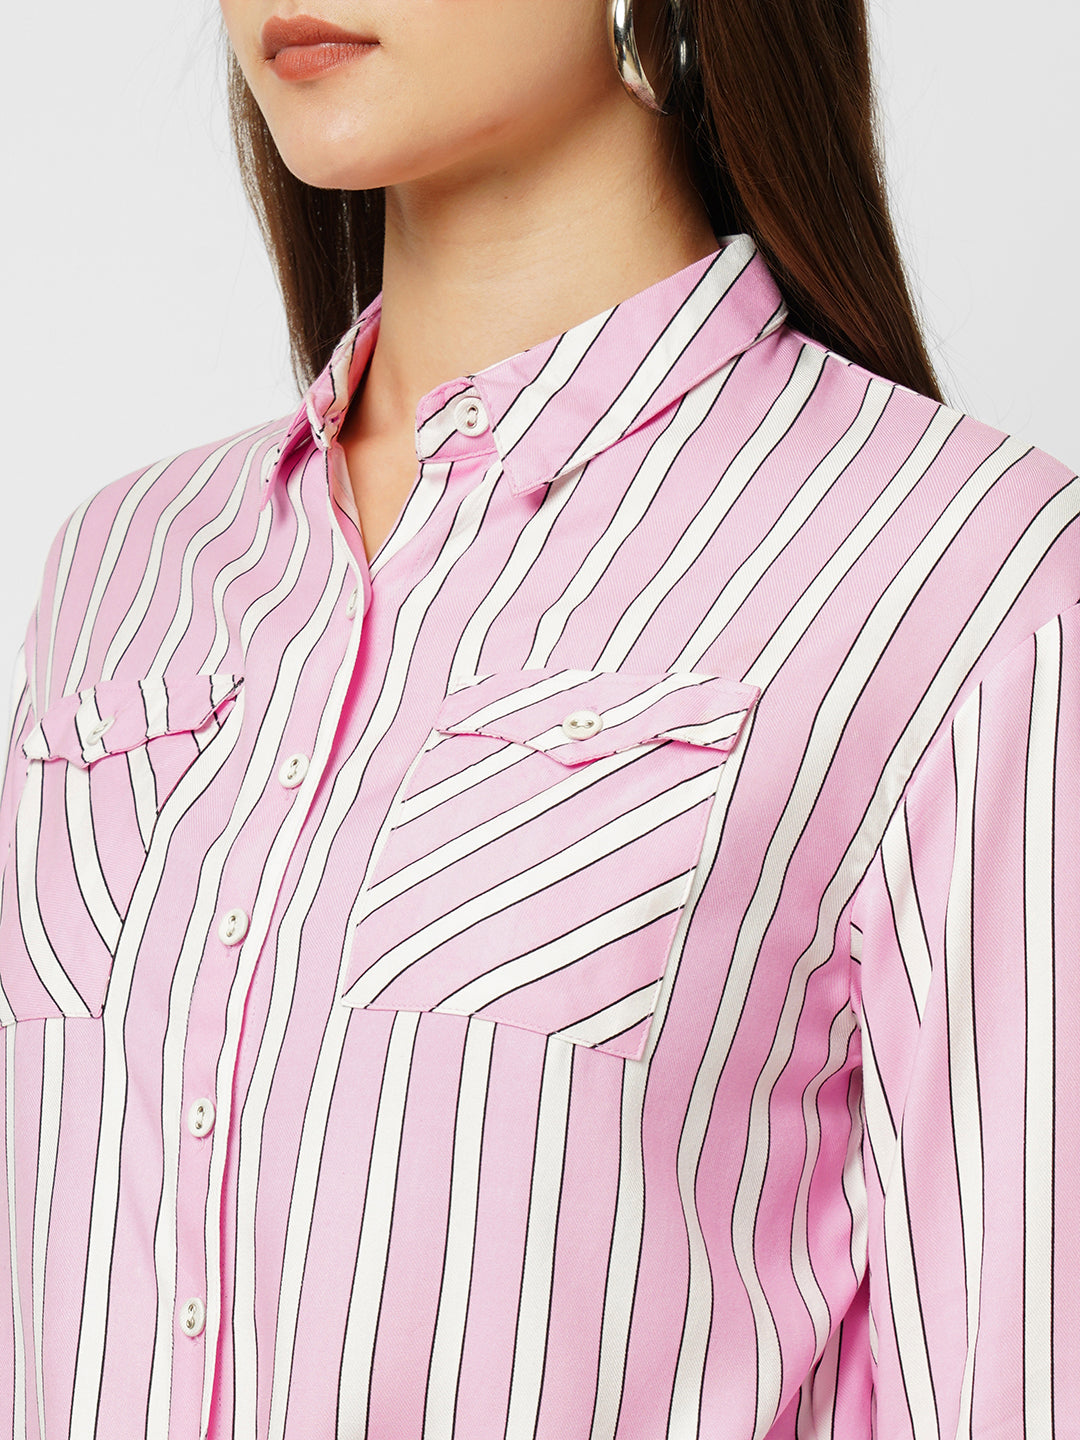 Women Digital Lavender & White Striped Three-Quarter Sleeves Shirts